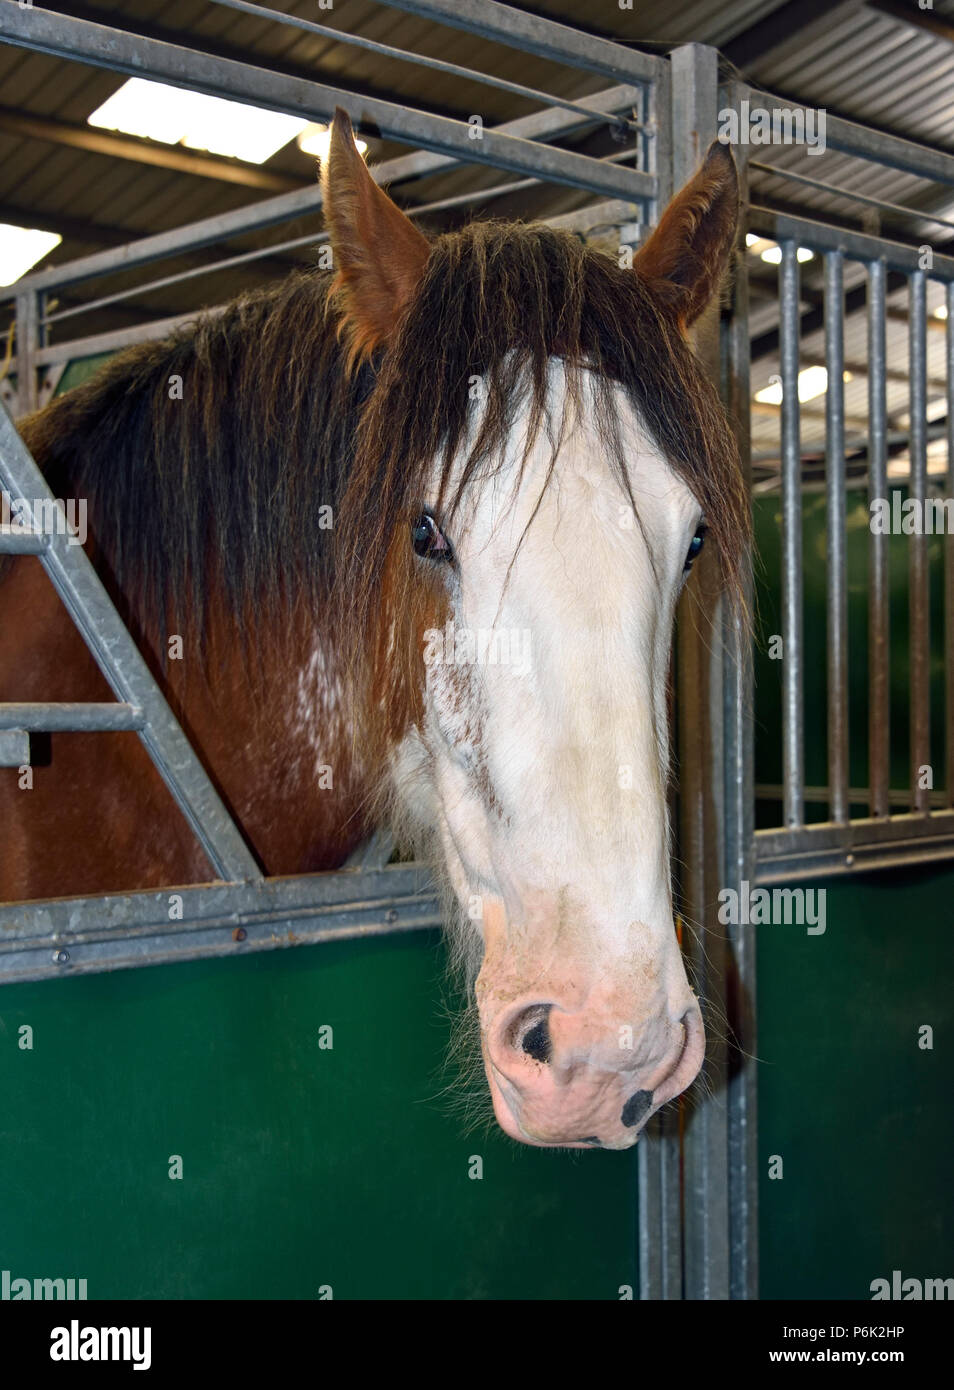 Cabeza de caballo Clydesdale en estable. Royal Highland Show 2018, Ingliston, Edimburgo, Escocia, Reino Unido, Europa. Foto de stock